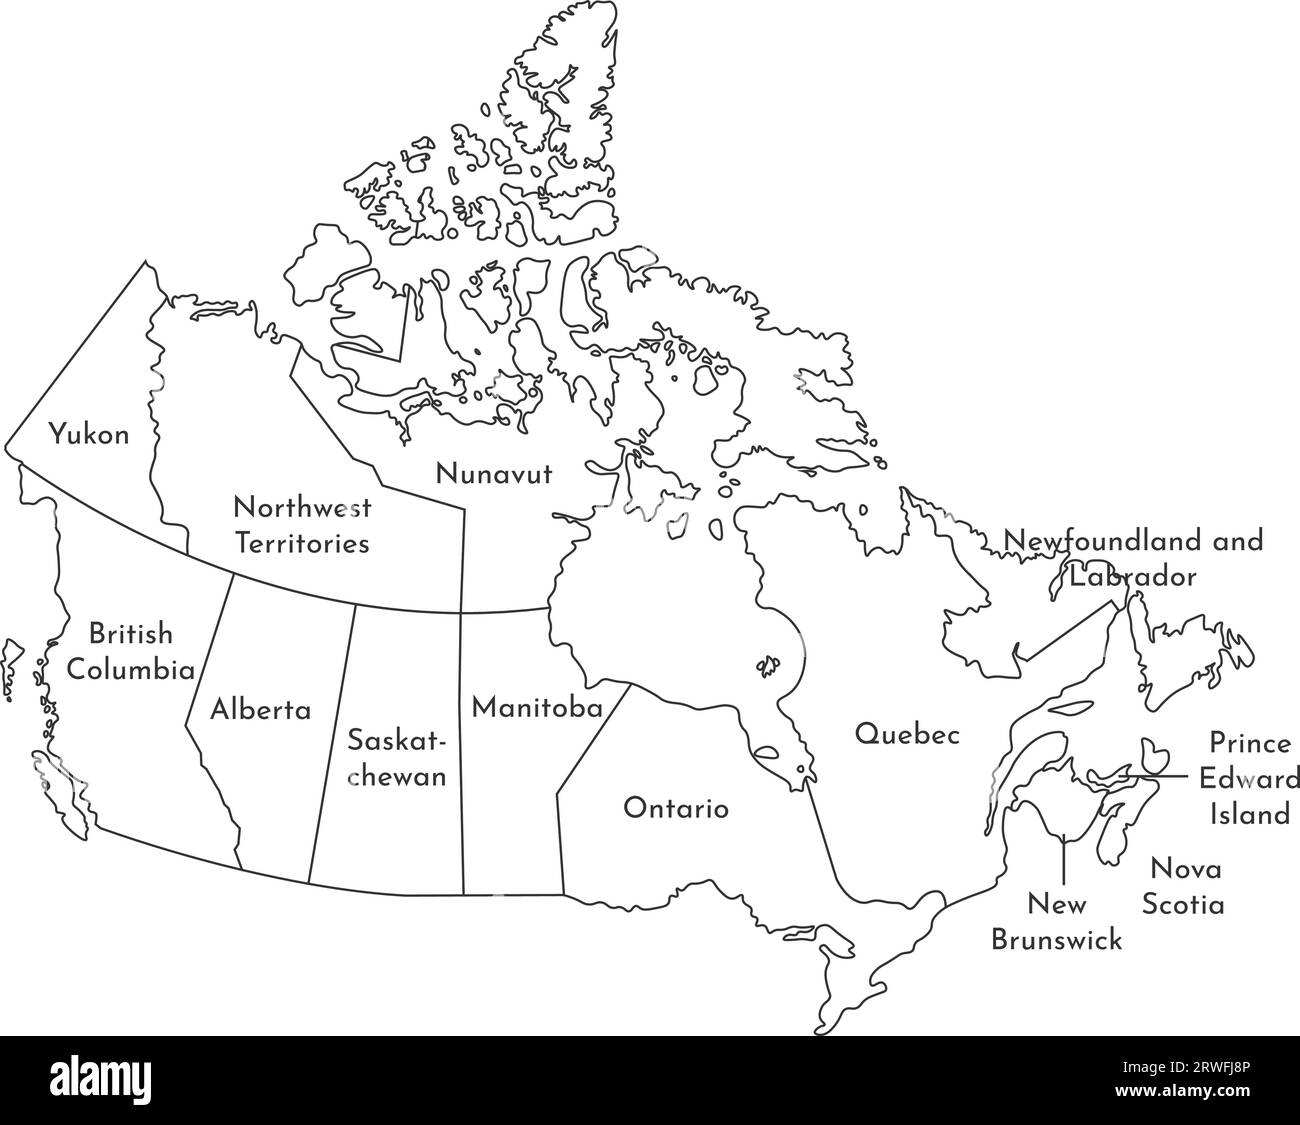 Illustrazione vettoriale isolata della mappa amministrativa semplificata del Canada. Confini e nomi delle regioni. Silhouette nere. Illustrazione Vettoriale